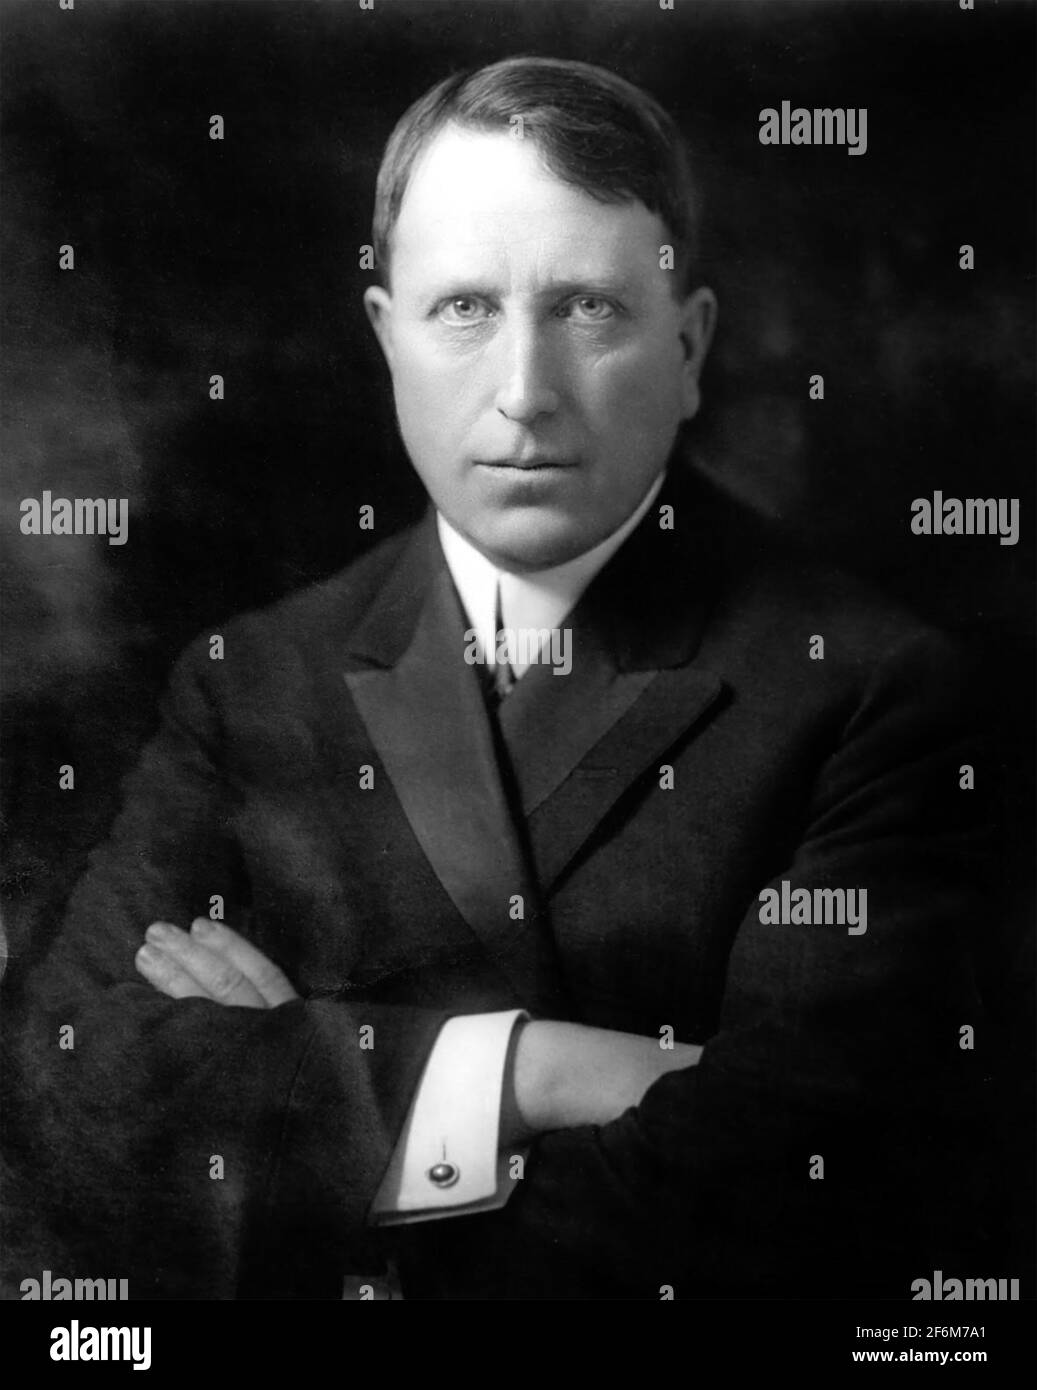 WILLIAM RANDOLPH HEARST (1863-1951) uomo politico americano e editore di giornali, circa 1900. Foto Stock